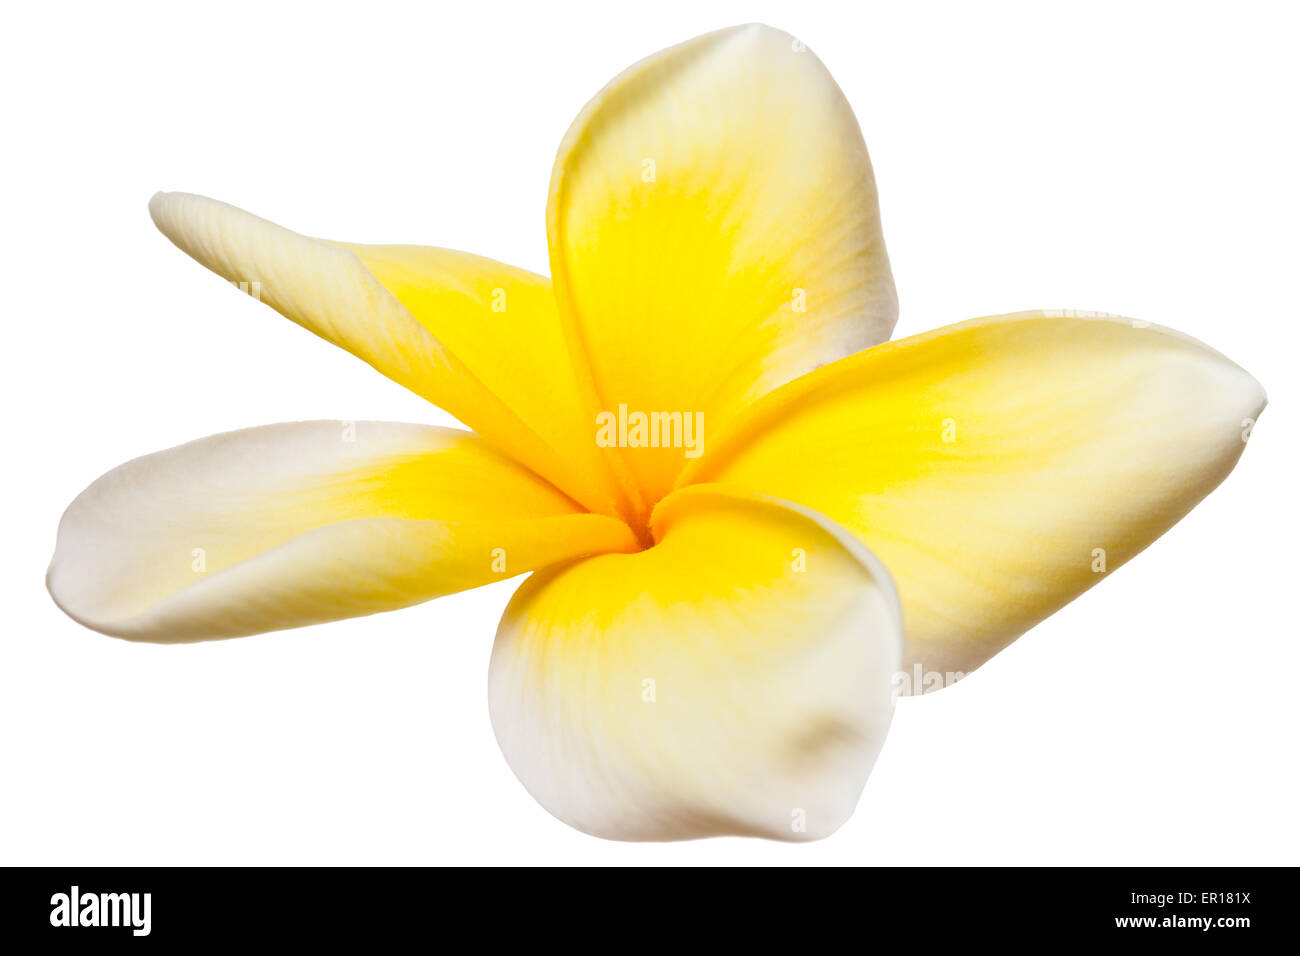 Plumeria Frangipani Flower Yellow and White Tropical Flowers on White Stock Photo